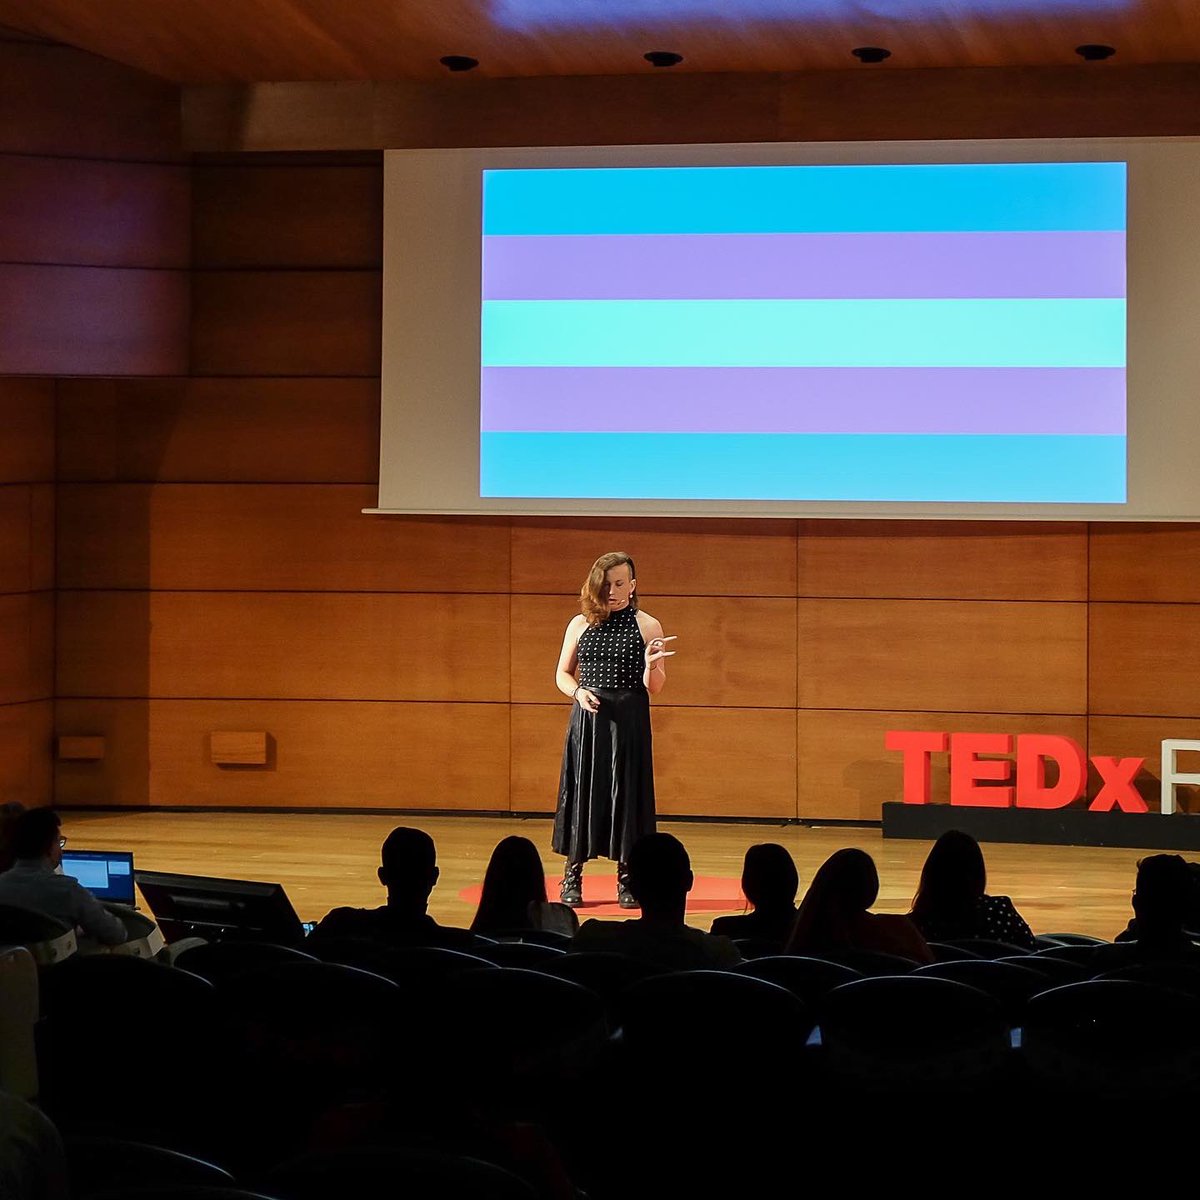 Computación cuántica queer llega a TEDx. Pronto en su cine en casa. //
Queer quantum computing meets TEDx. Soon in your home cinema.
#transinscience #cienciatrans #trans #queer #ted #tedx #queerinscience #queerinstem #cienciaqueer #ciencia #science #transesbello #transisbeautiful